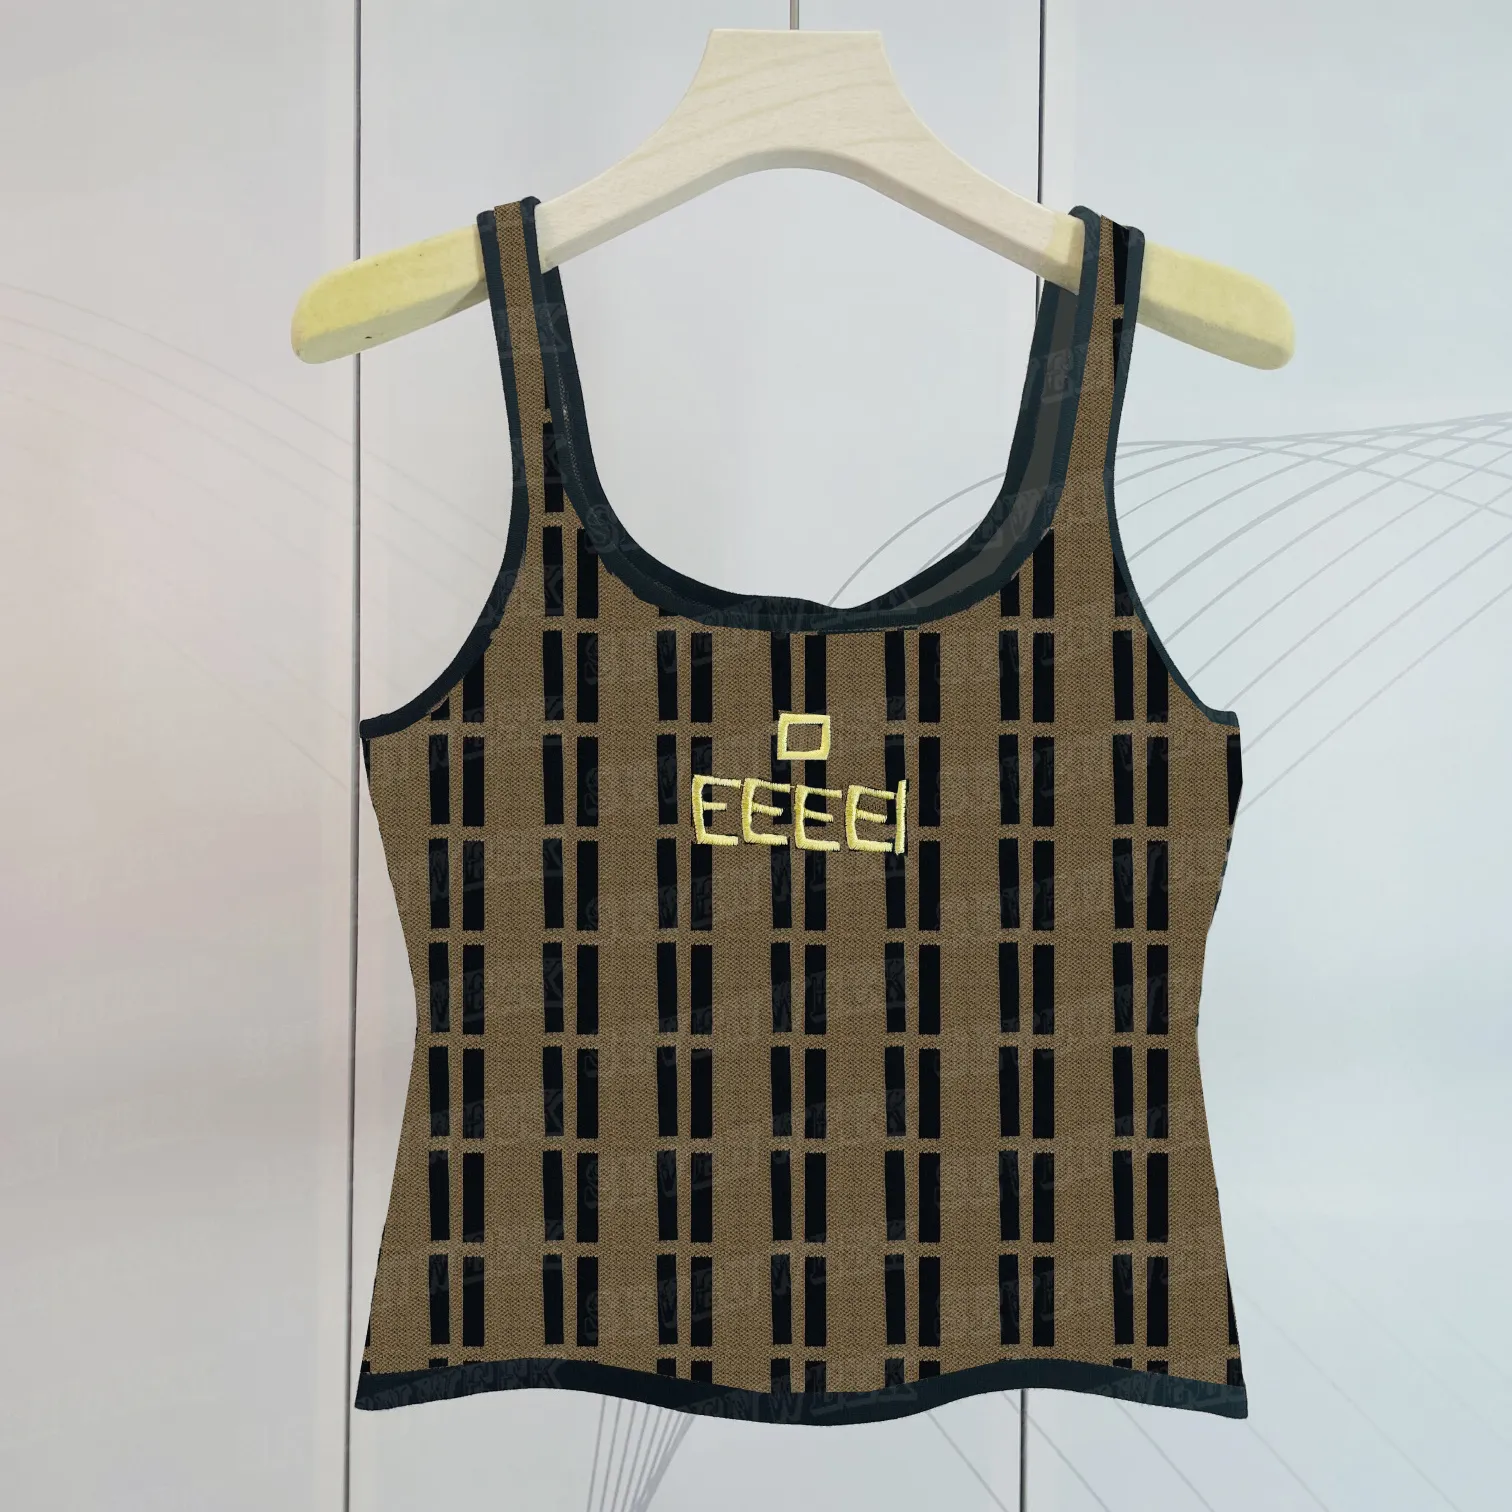 デザイナーニットベストニット女性タンクトップレター刺繍デザインニットパーカーノースリーブショートスタイルのセーターベストレディー